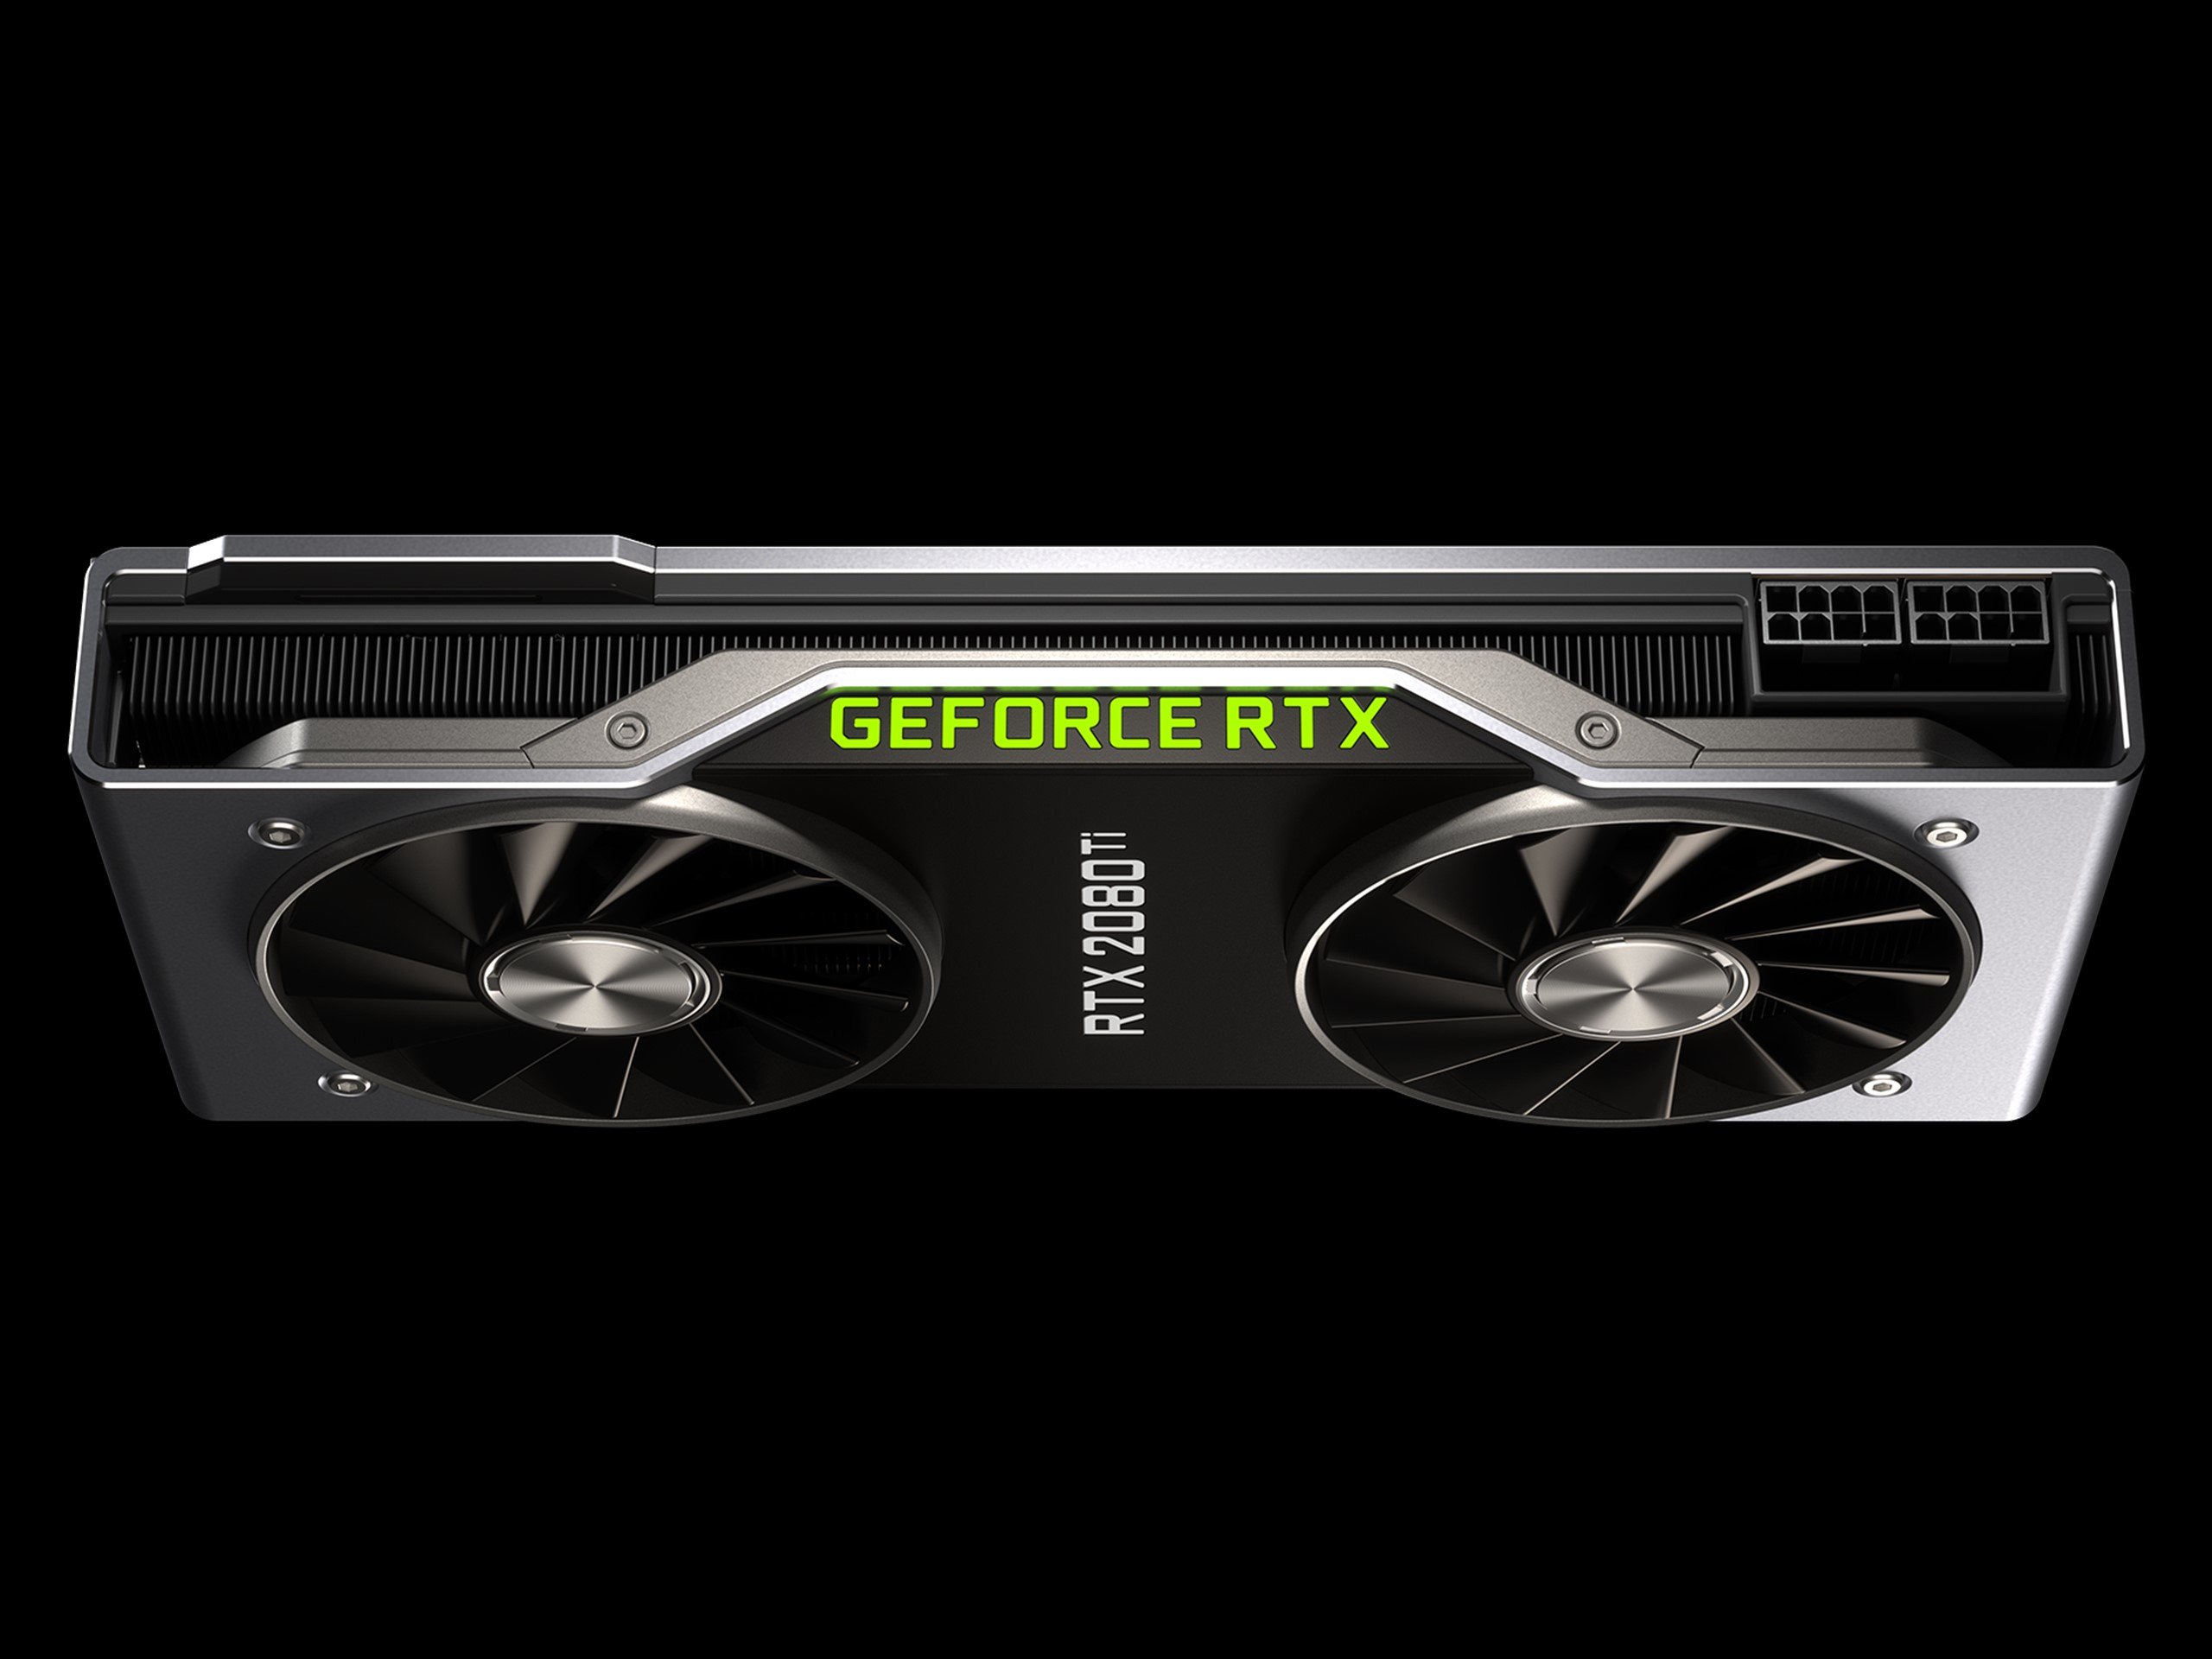 Image à la une de MaJ: NVIDIA GeForce RTX Founders Editions, caractéristiques et prix